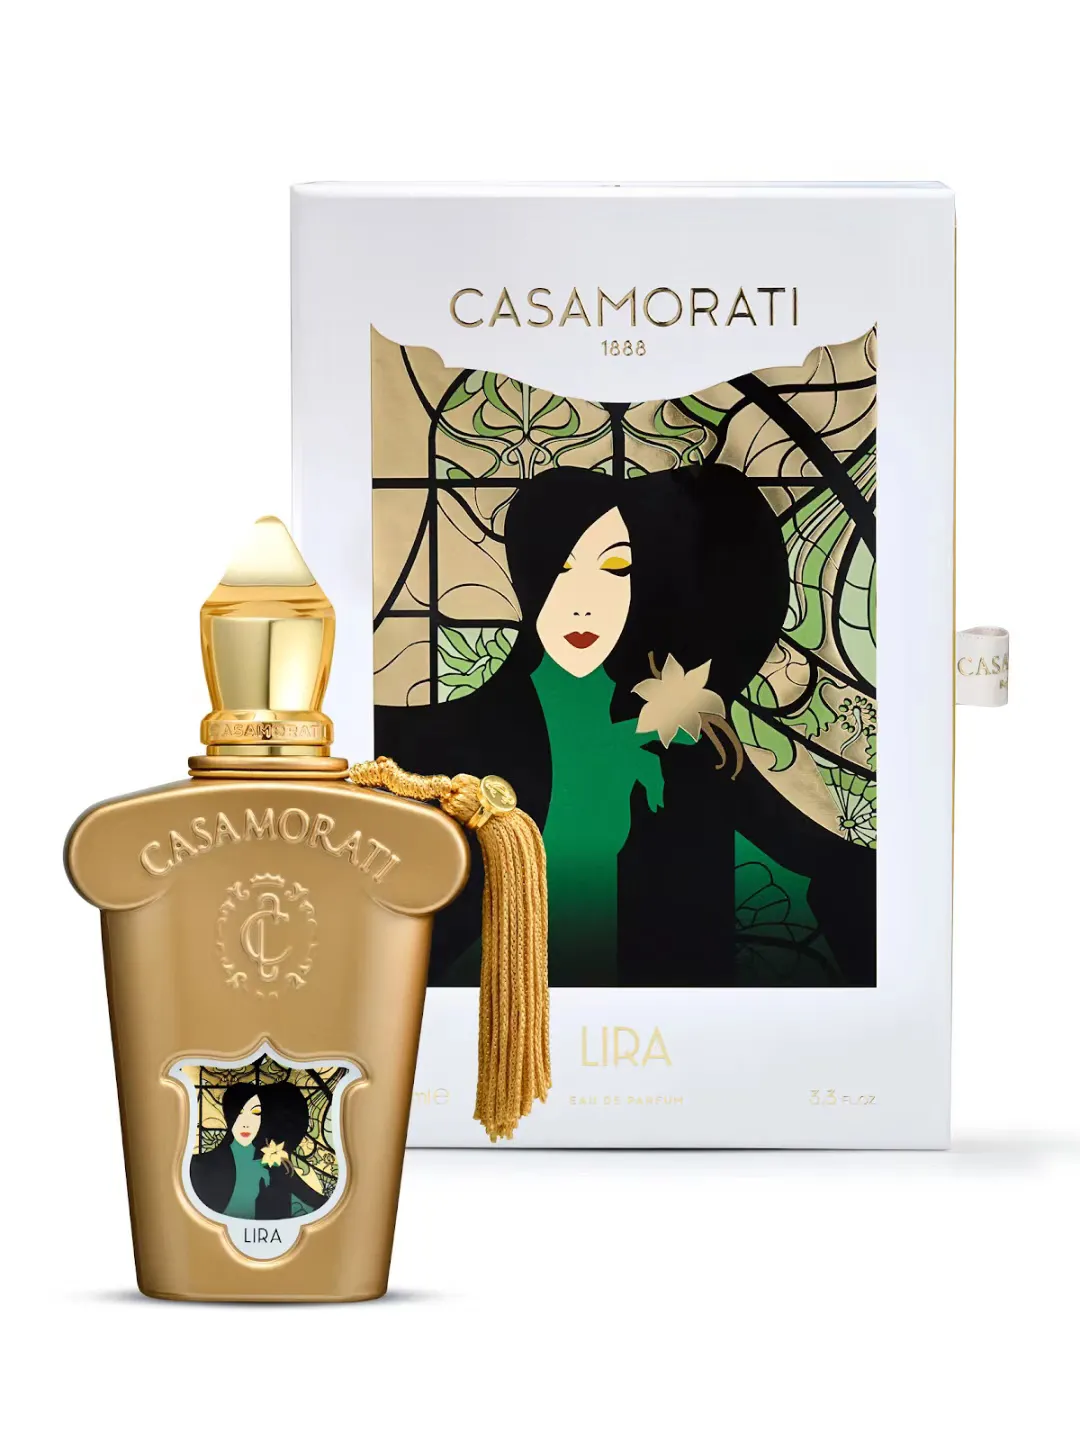 Casamorati Dal1888 Perfume 100 ml mefisto lira bukiet pomysł La Tosca 1888 Zapach Eau de parfum długotrwały zapach EDP MĘŻCZYZN KOBIET